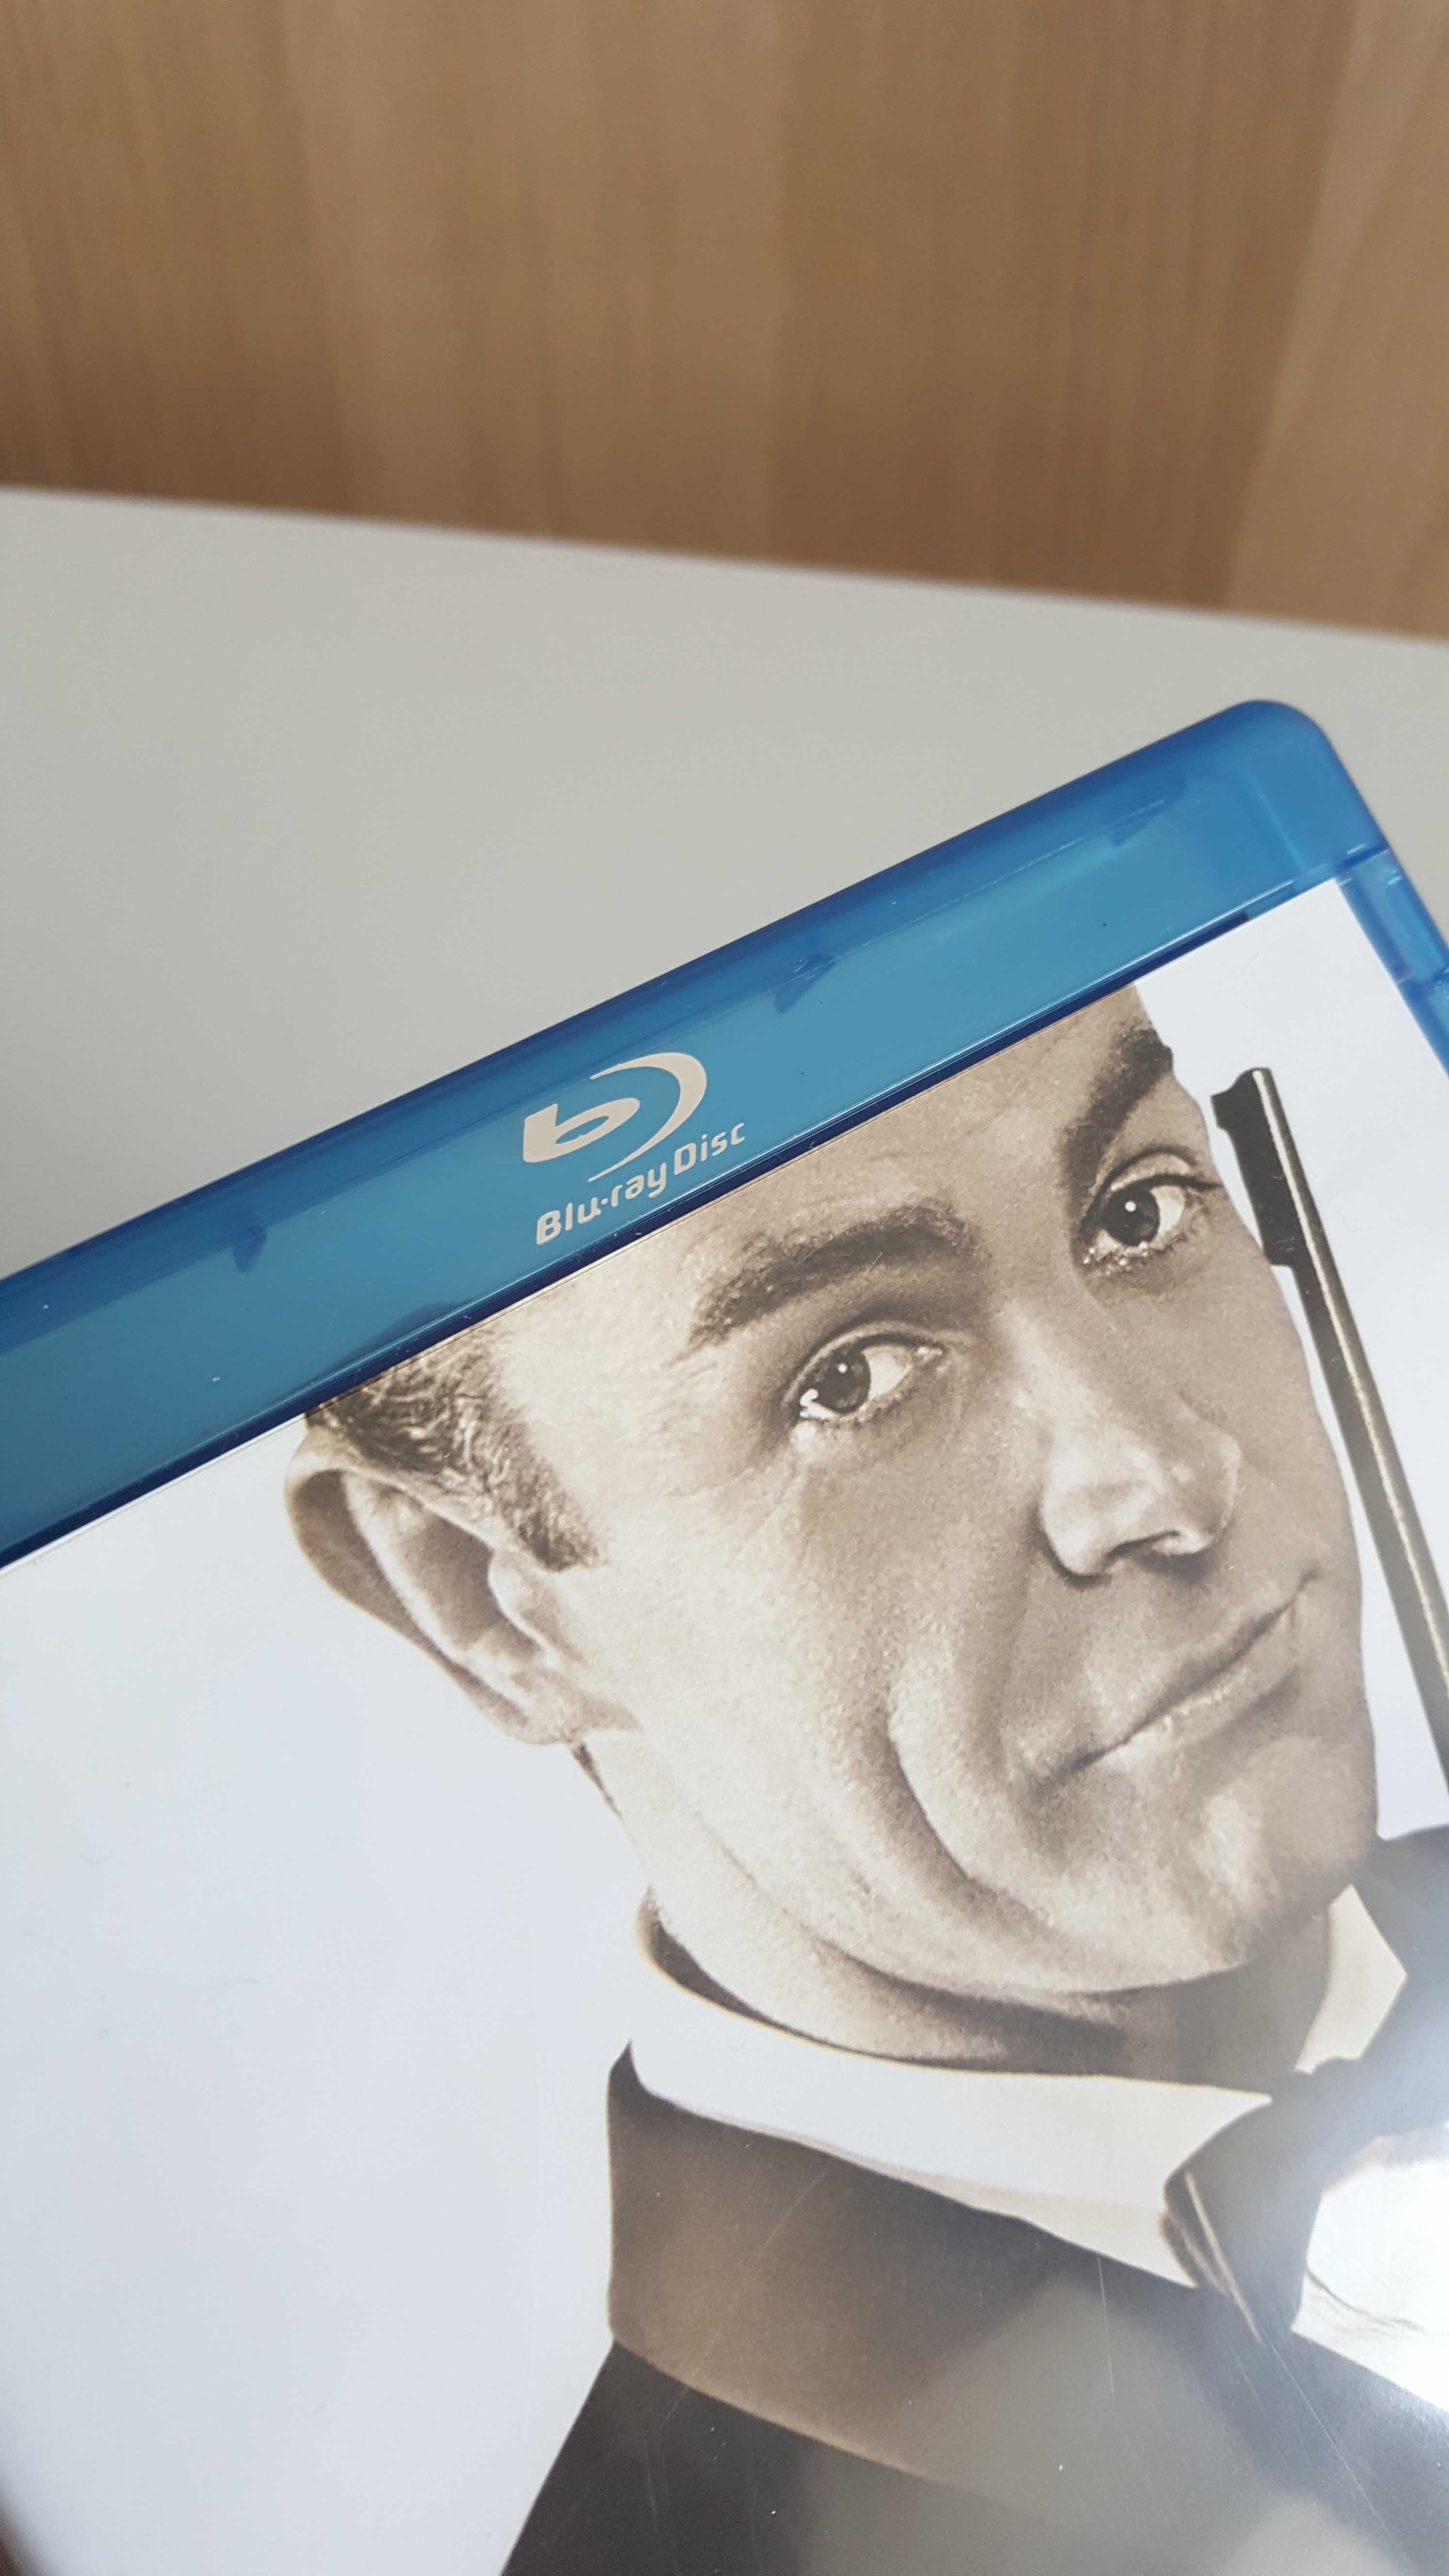 007 James Bond Sean Connery Kolekcja płyta Blu-ray CD